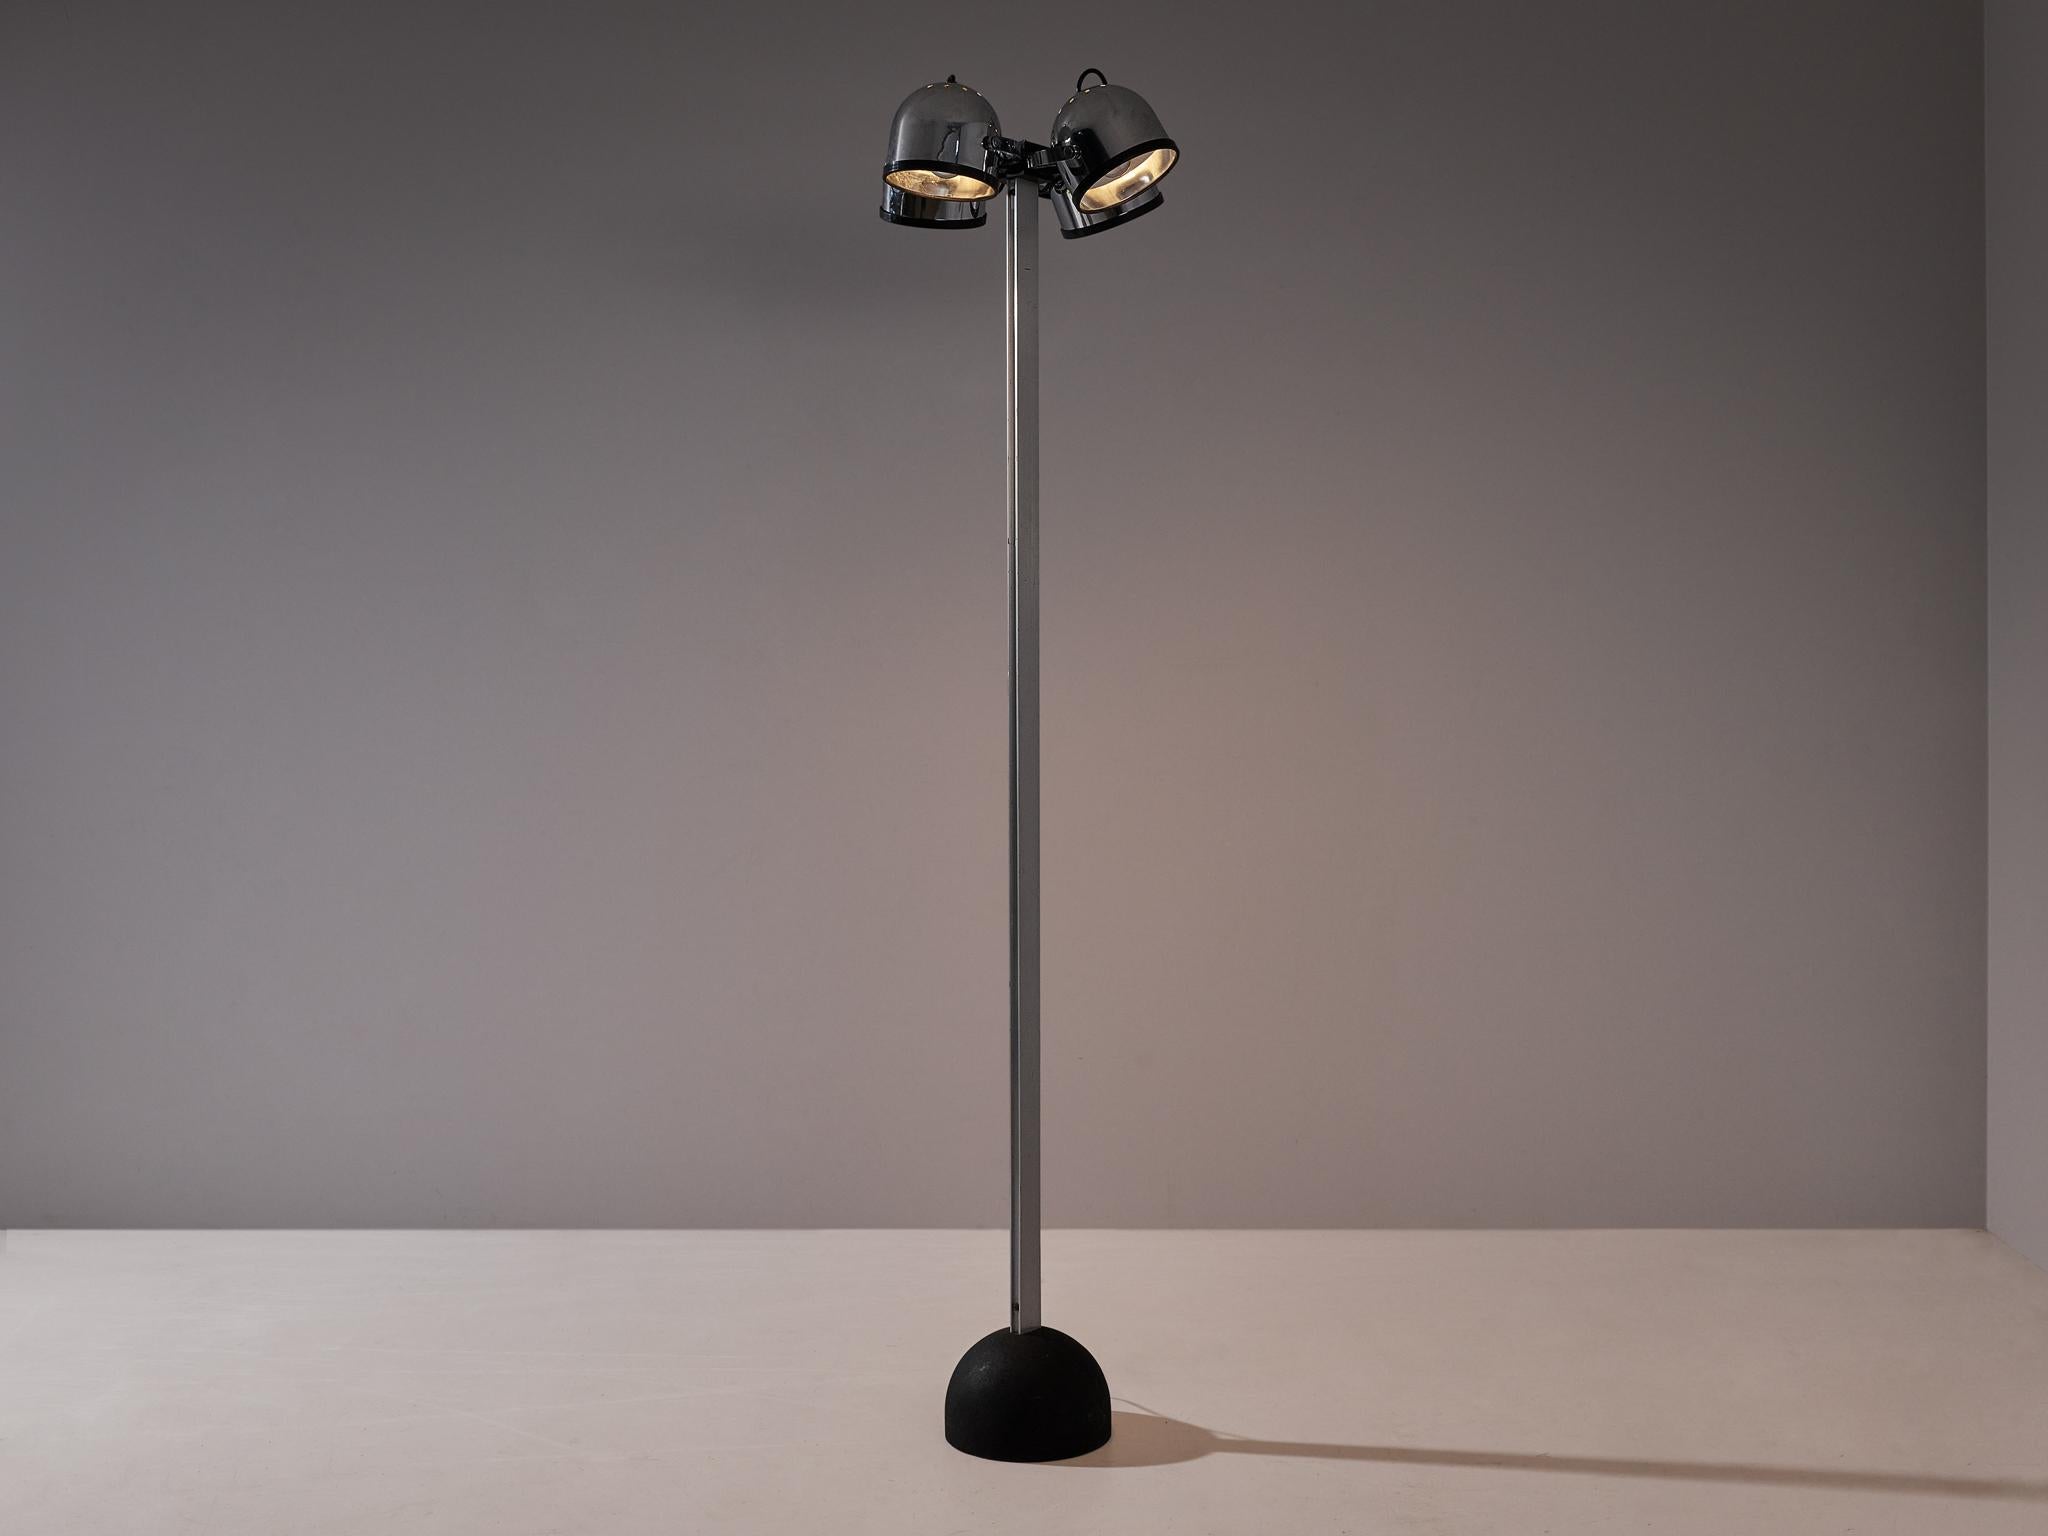 Gae Aulenti and Livio Castiglioni for Stilnovo, 'Sistema Trepiu, floor lamp, cast iron, chromed metal, aluminum, Italy, design 1972

Wonderful floor lamp designed by Gae Aulanti and Livio Castiglioni in Italy in 1972. This particular model is the